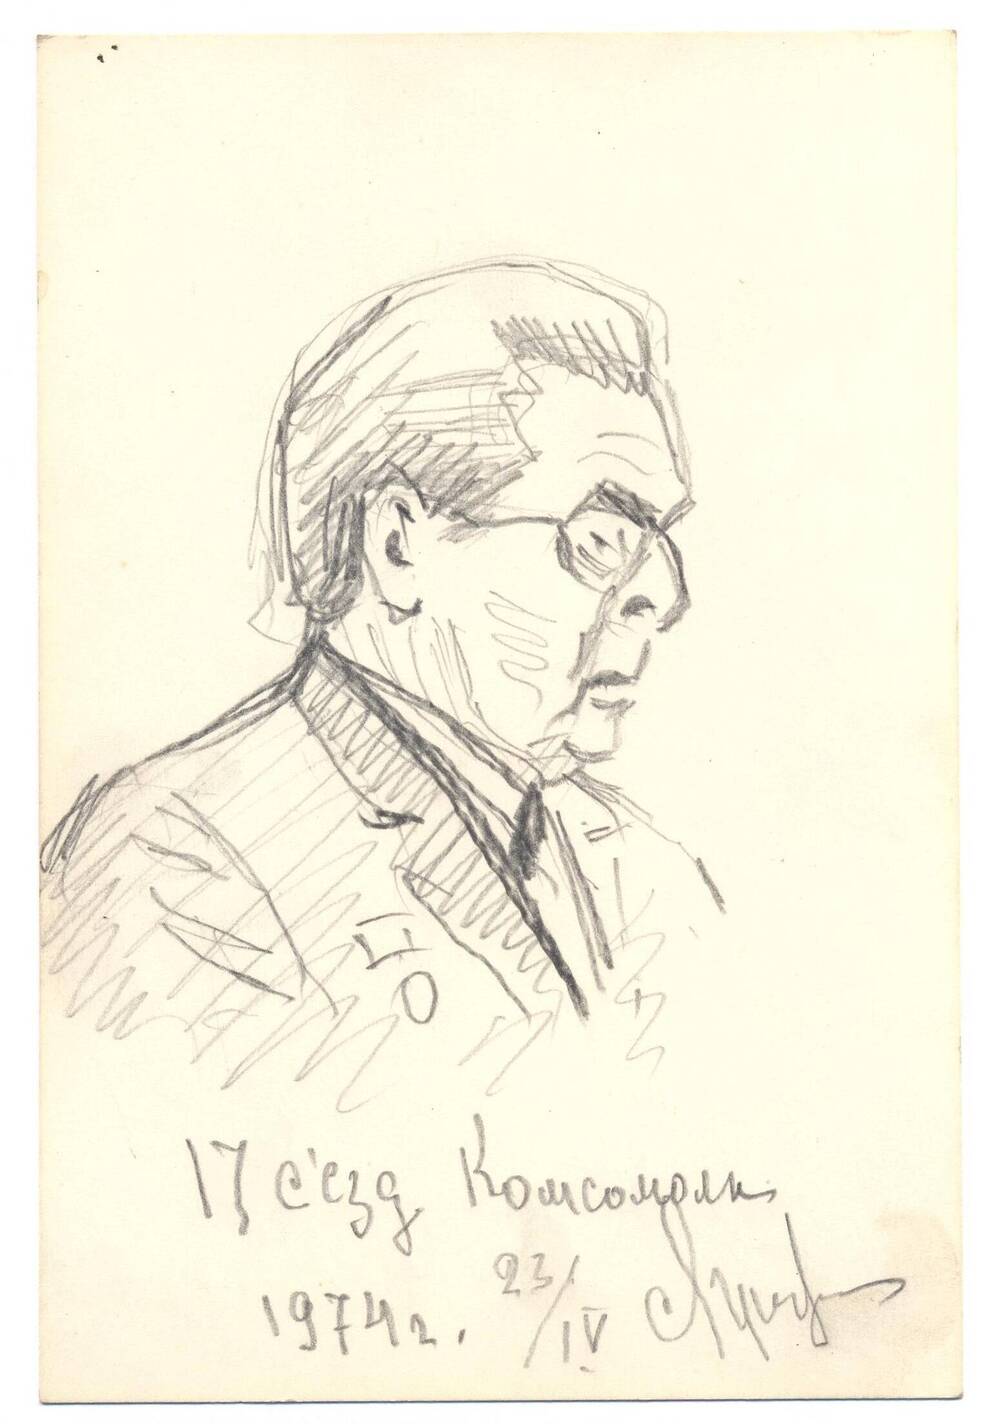 Графический набросок портрета Брежнева Л.И., автор Лунев Н.А.